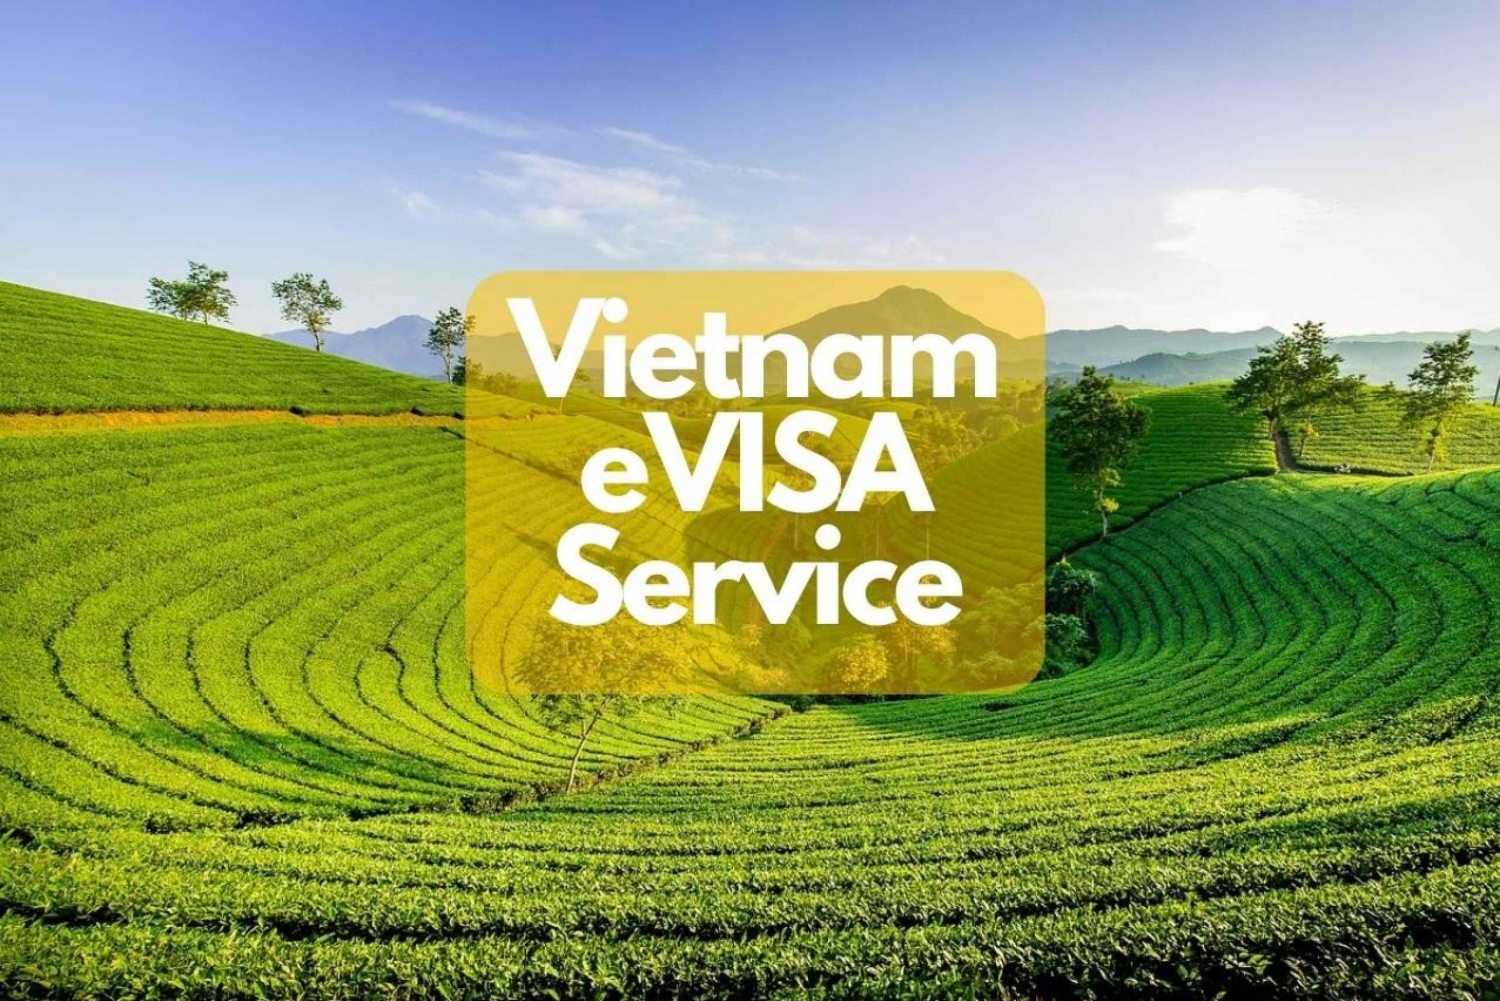 Serviço E-Visa do Vietnã para viajantes internacionais